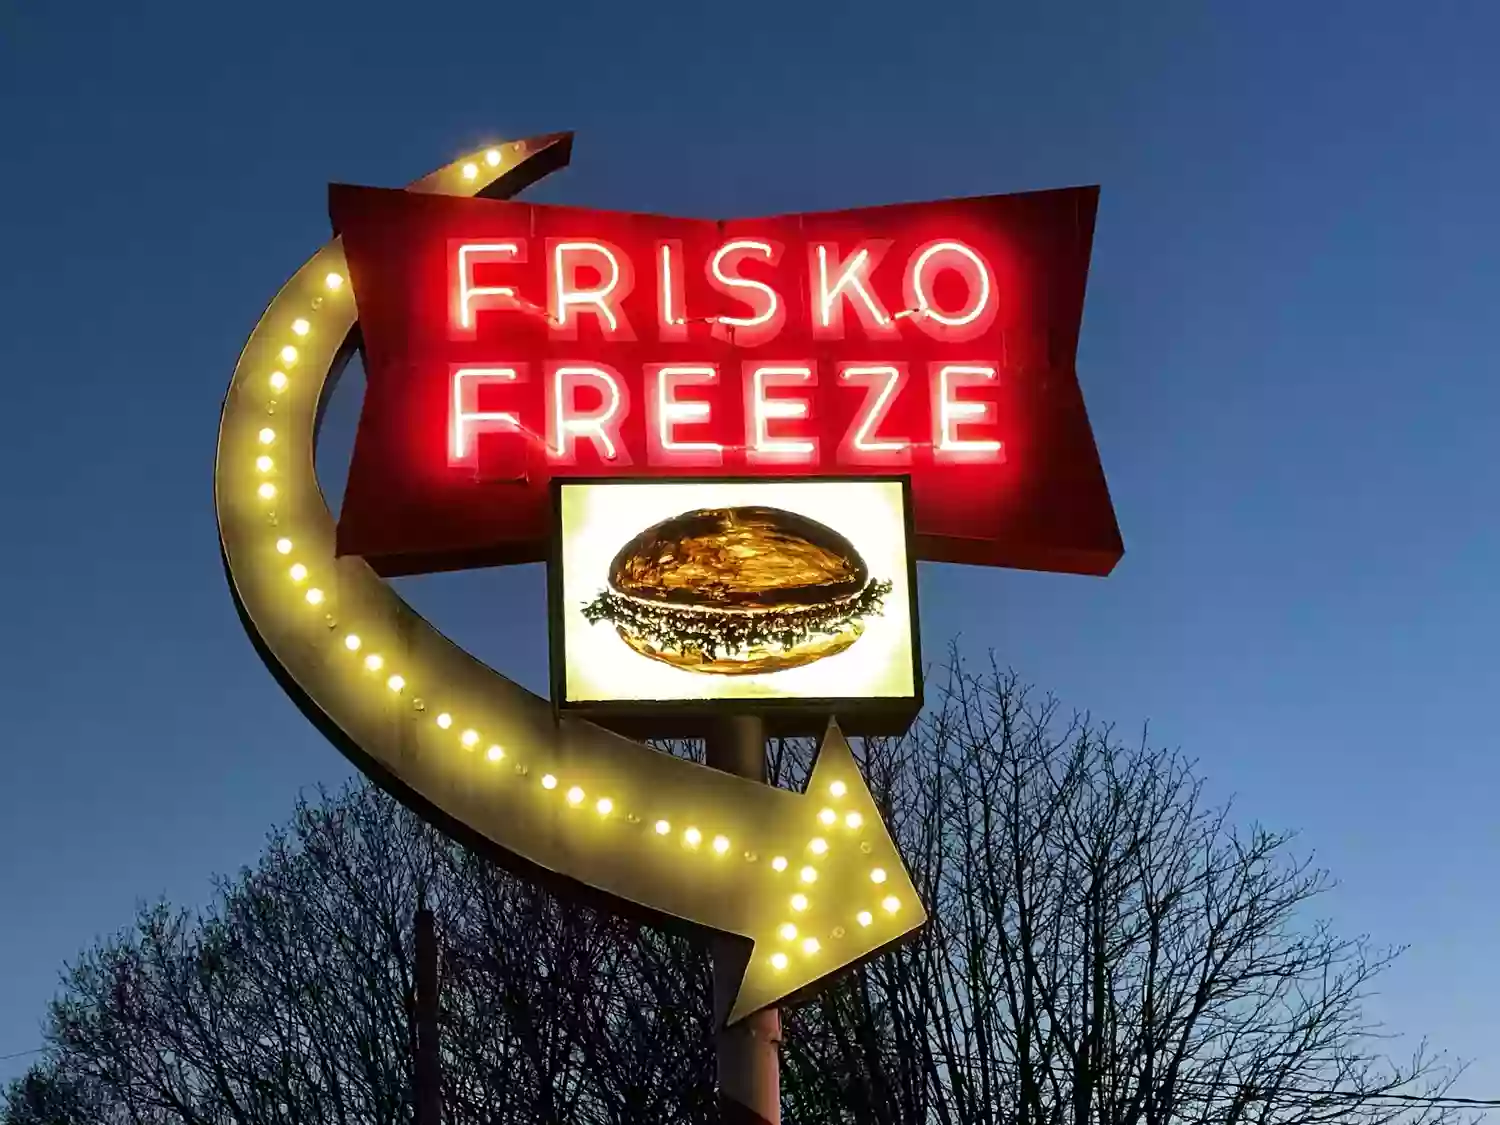 Frisko Freeze